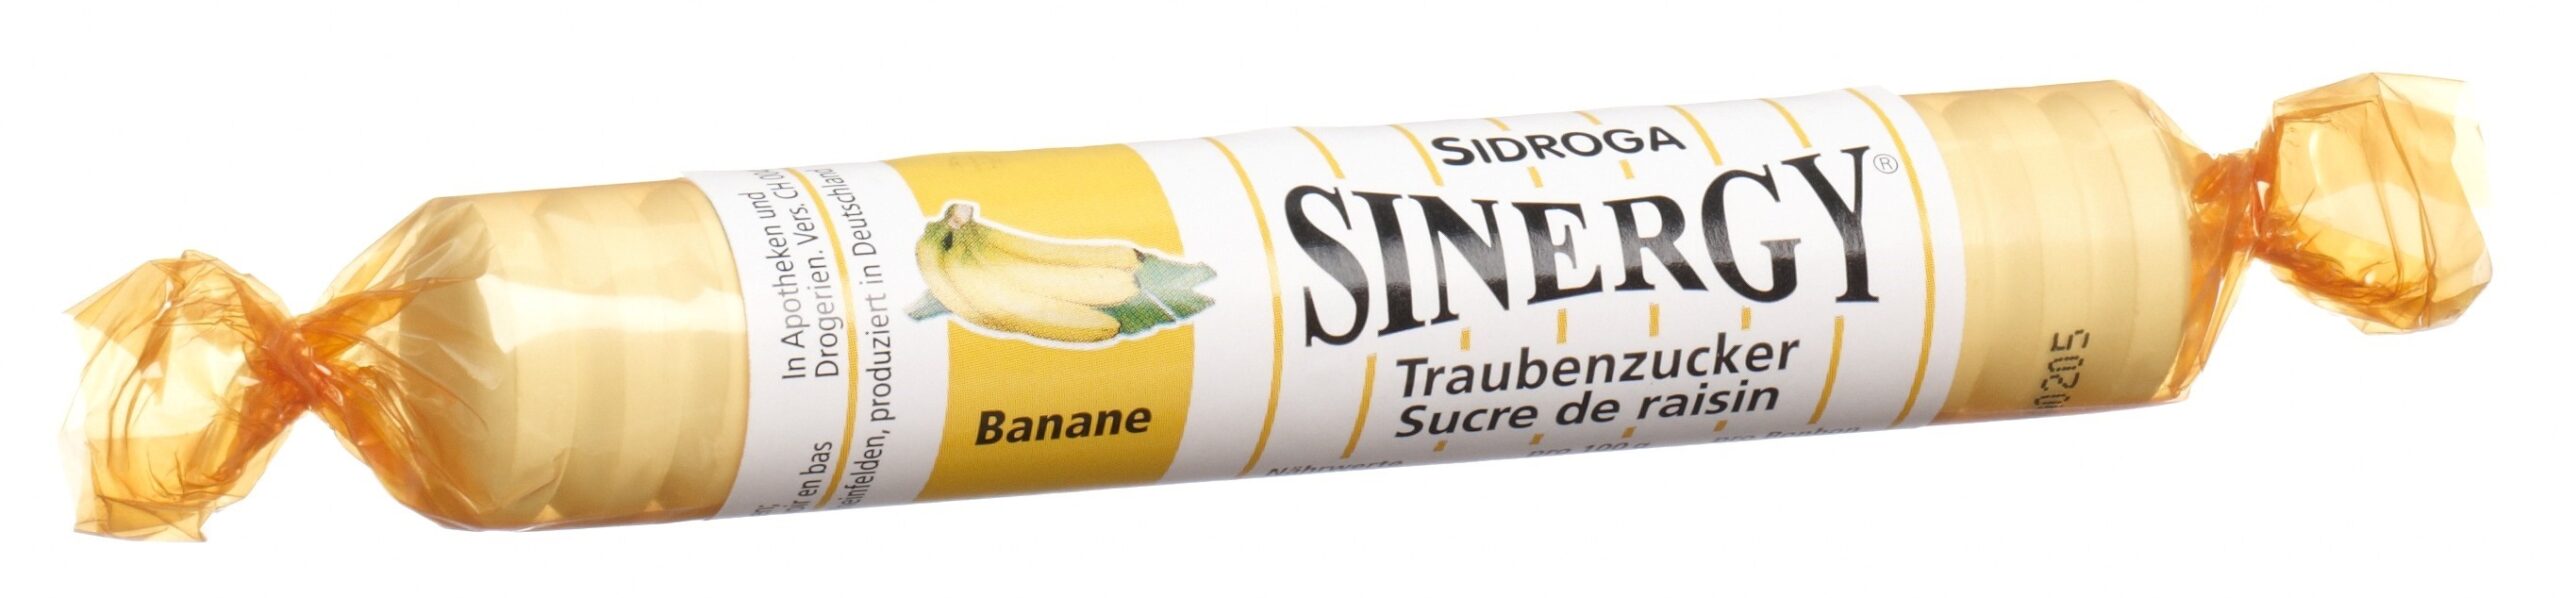 SINERGY Traubenzucker Banane Rolle 40 g